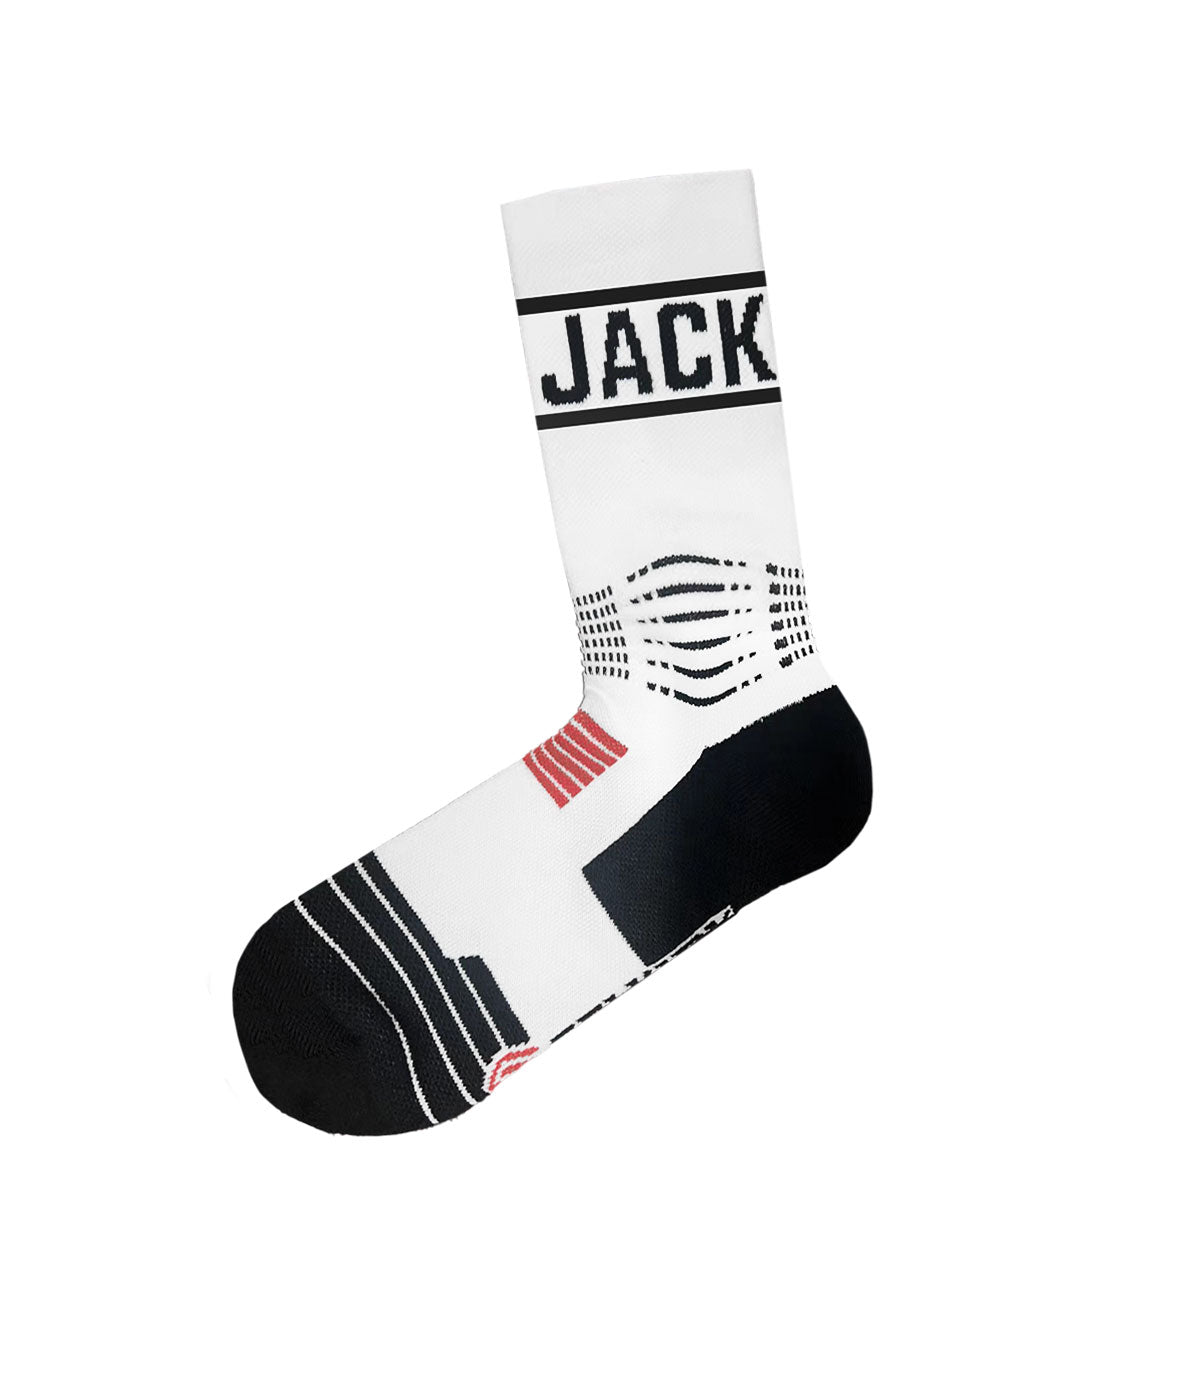 Selkirk Sport “Jack” Socks